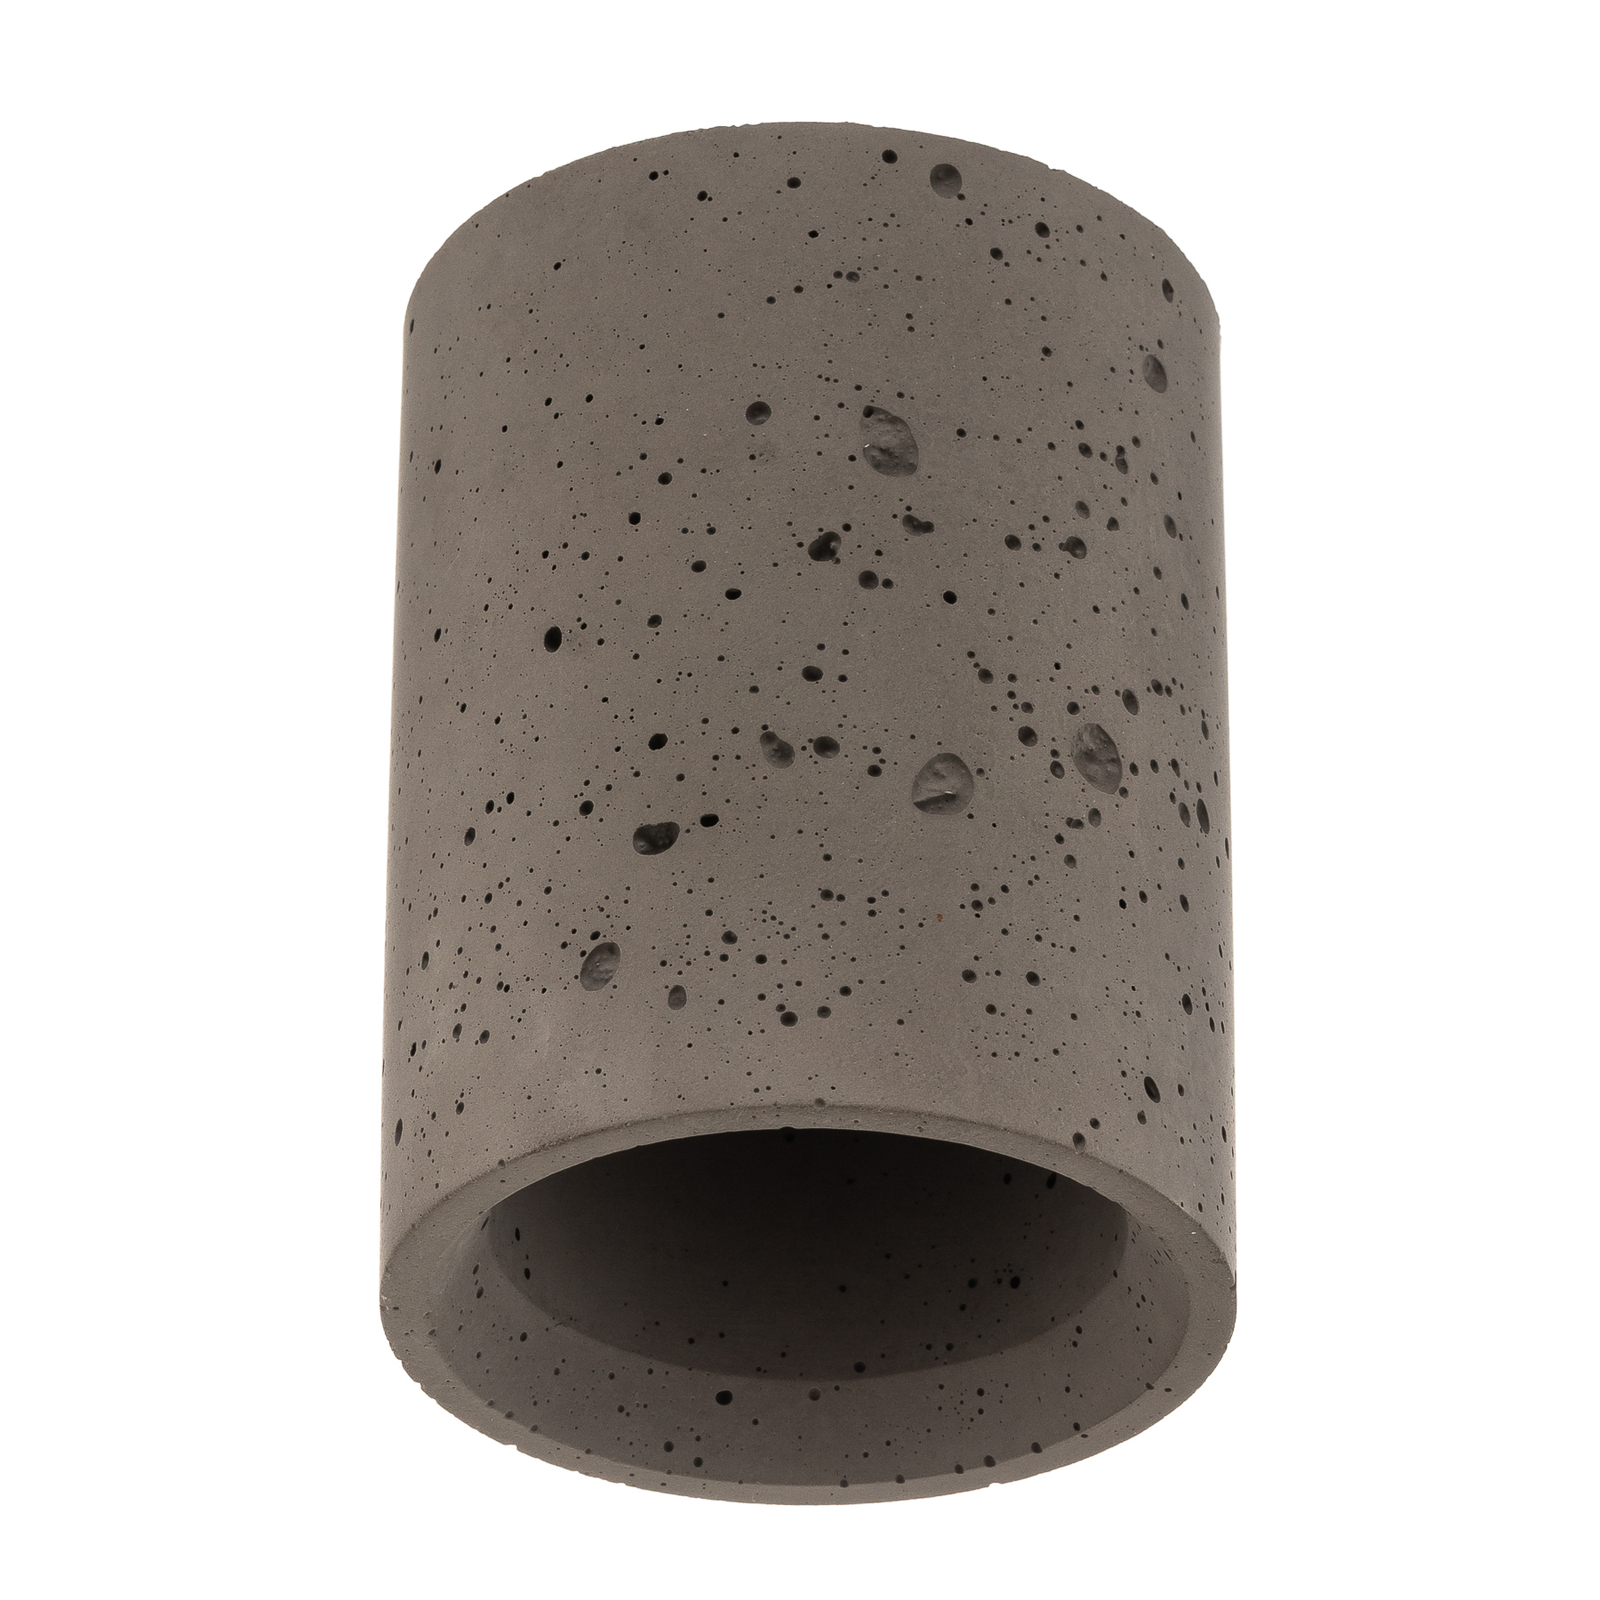 Svetilka Shy S iz betona, Ø 9 cm